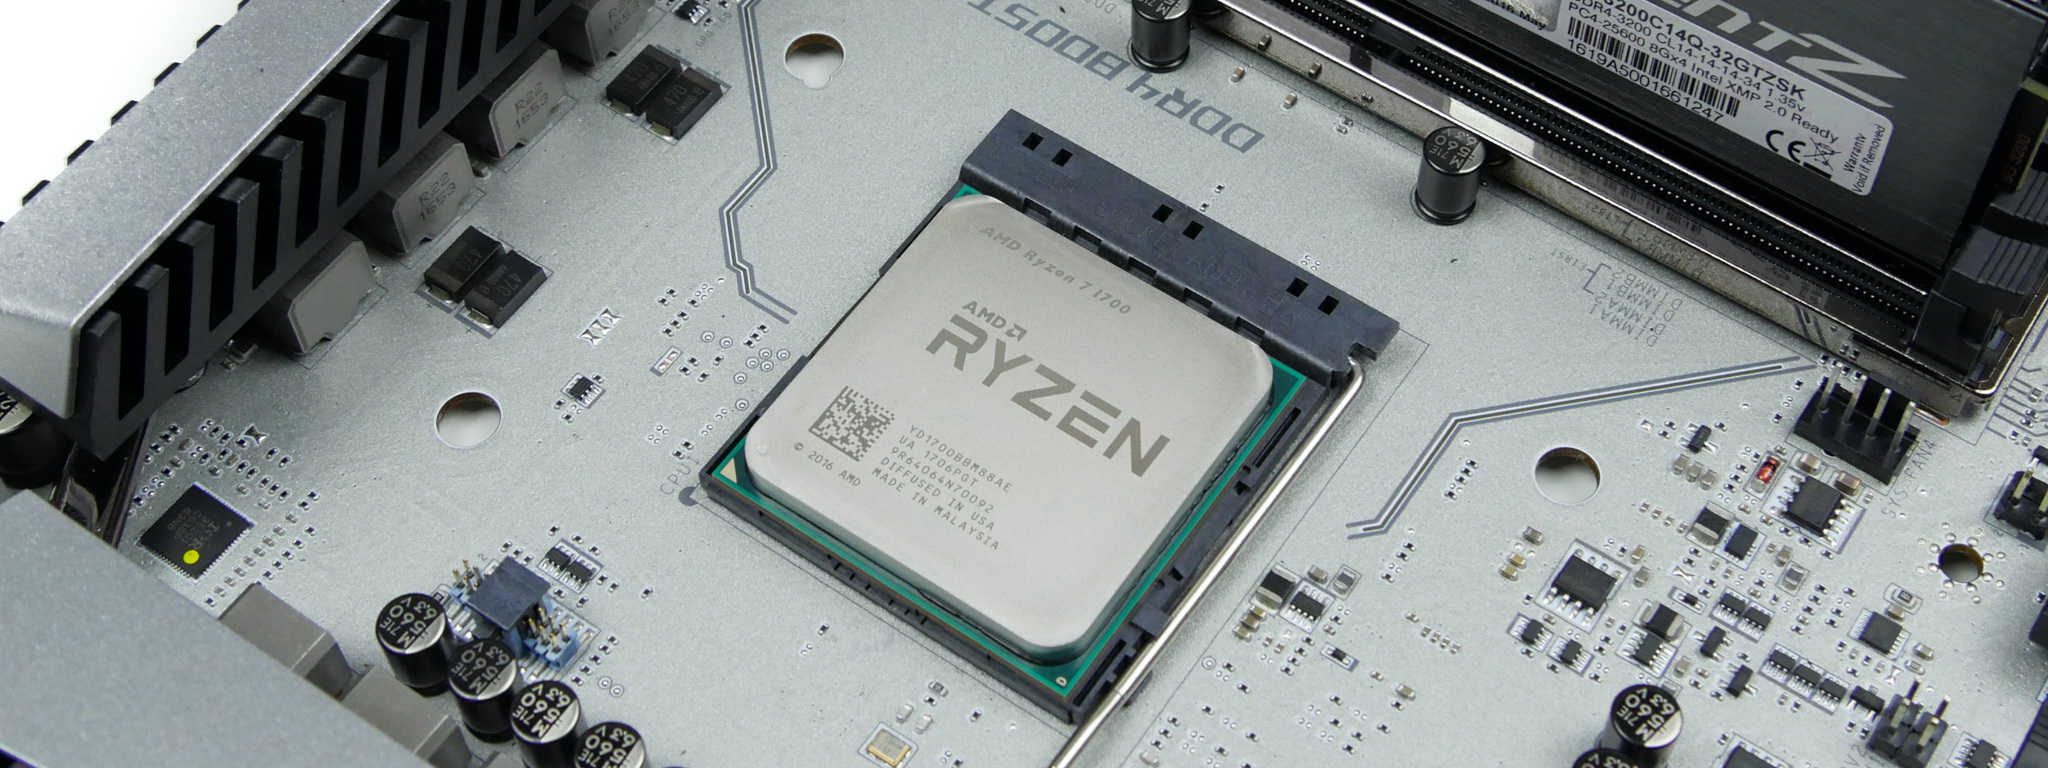 AMD cập nhật bản AGESA mới, mở rộng khả năng hỗ trợ DDR4